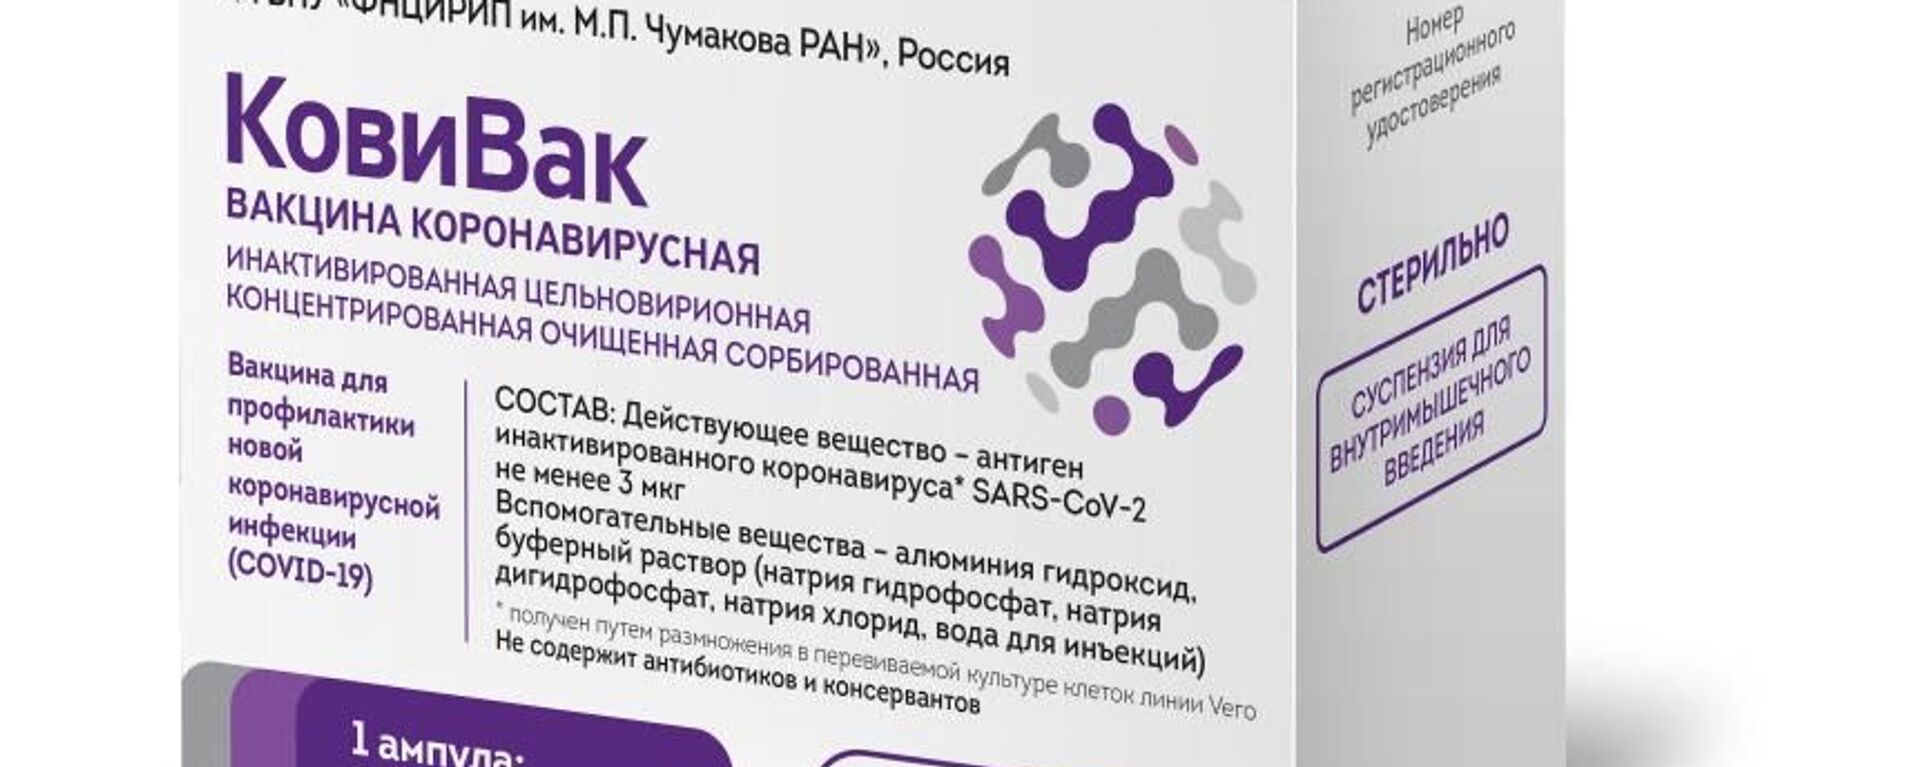 V Rossii zaregistrirovana vaksina Kovivak ot COVID-19  - Sputnik O‘zbekiston, 1920, 20.02.2021